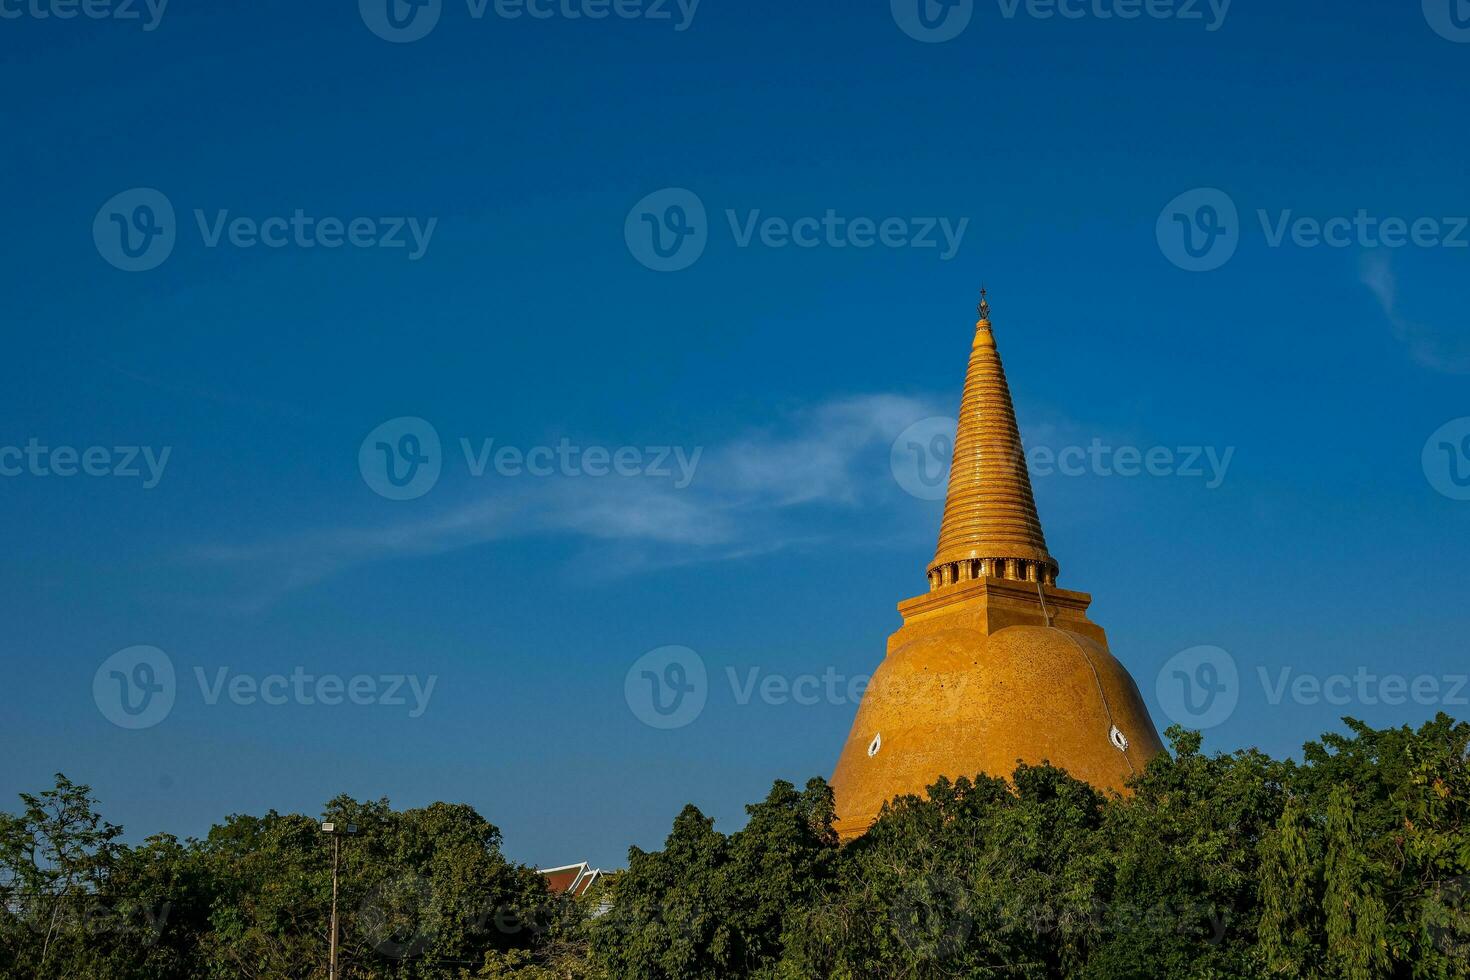 phra caminho chedi, a maior e mais alto pagode dentro Tailândia e em torno da área localizado às amphoe mueang Nakhon caminho província. foto